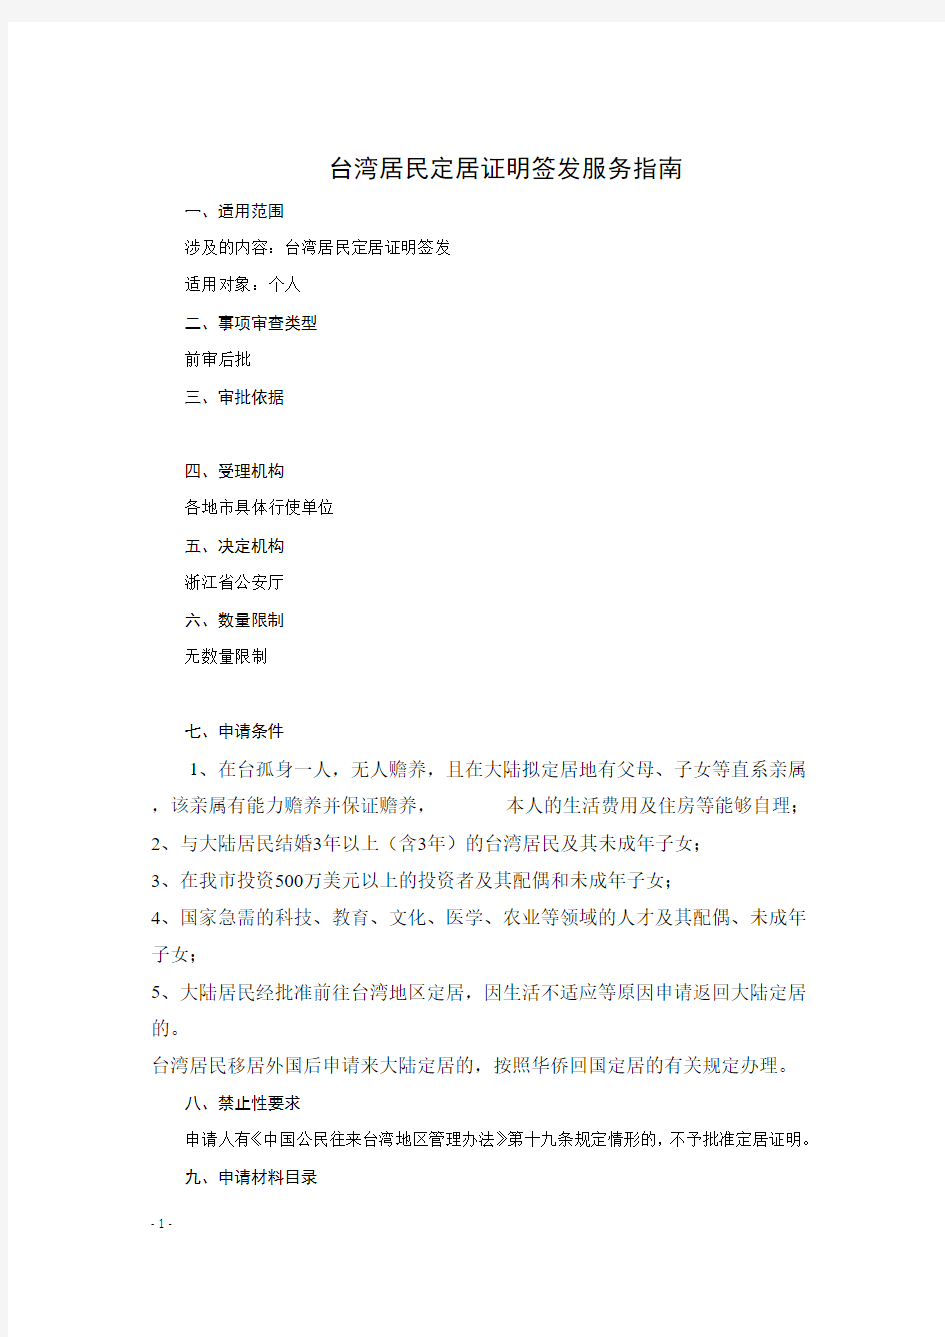 台湾居民定居证明签发(省公安厅)